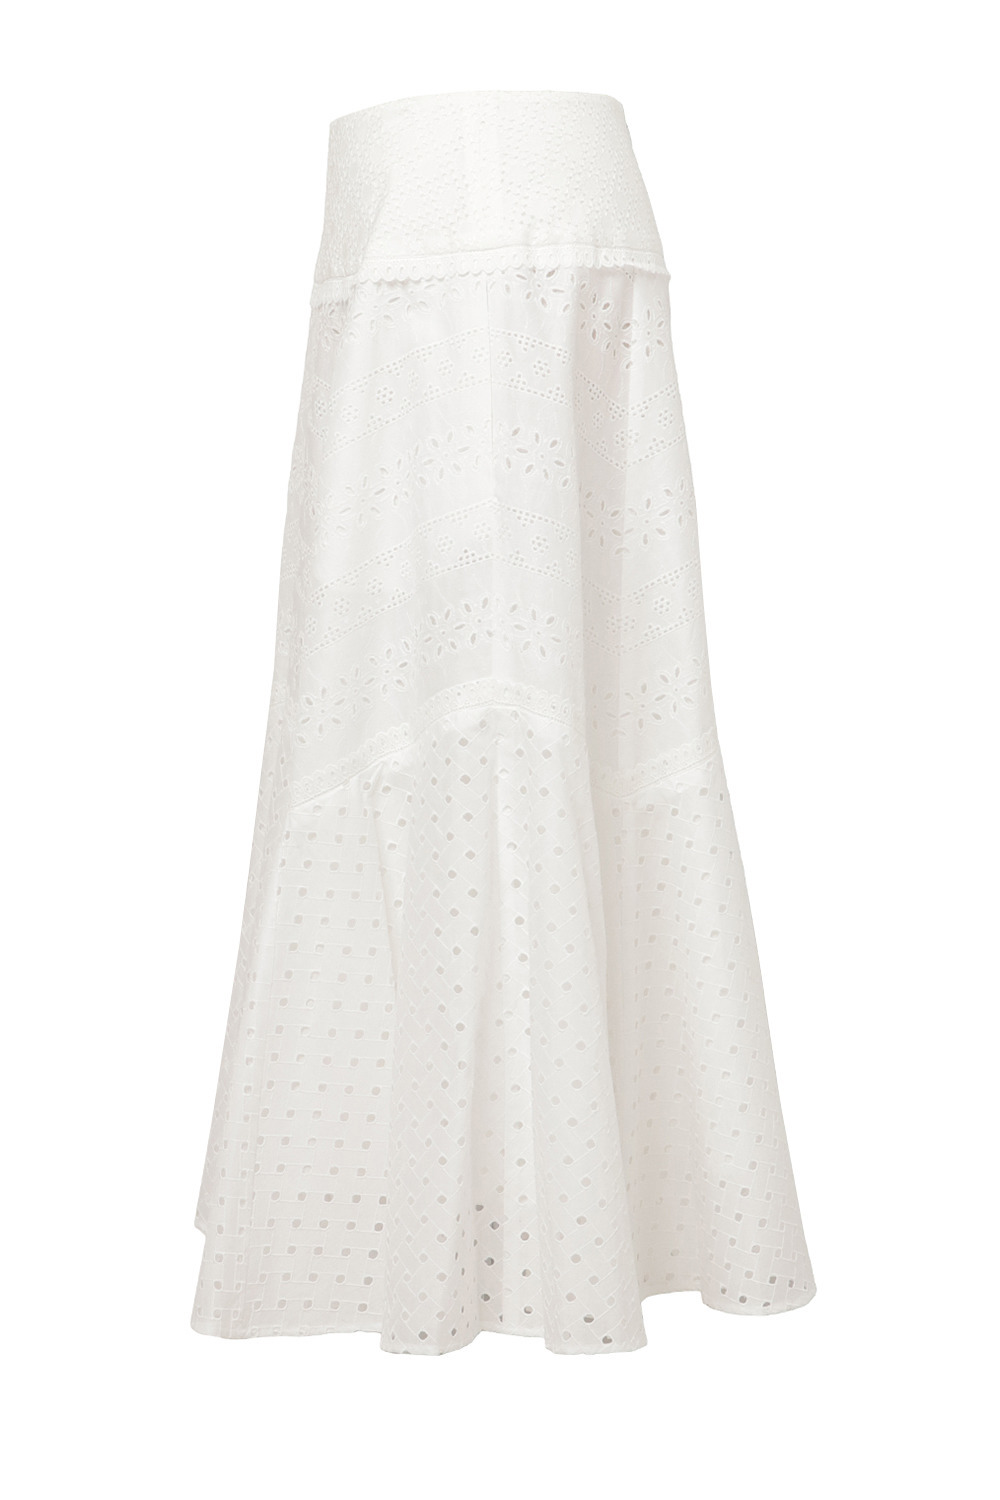 Cotton Lace Patchwork スカート 詳細画像 ホワイト 1